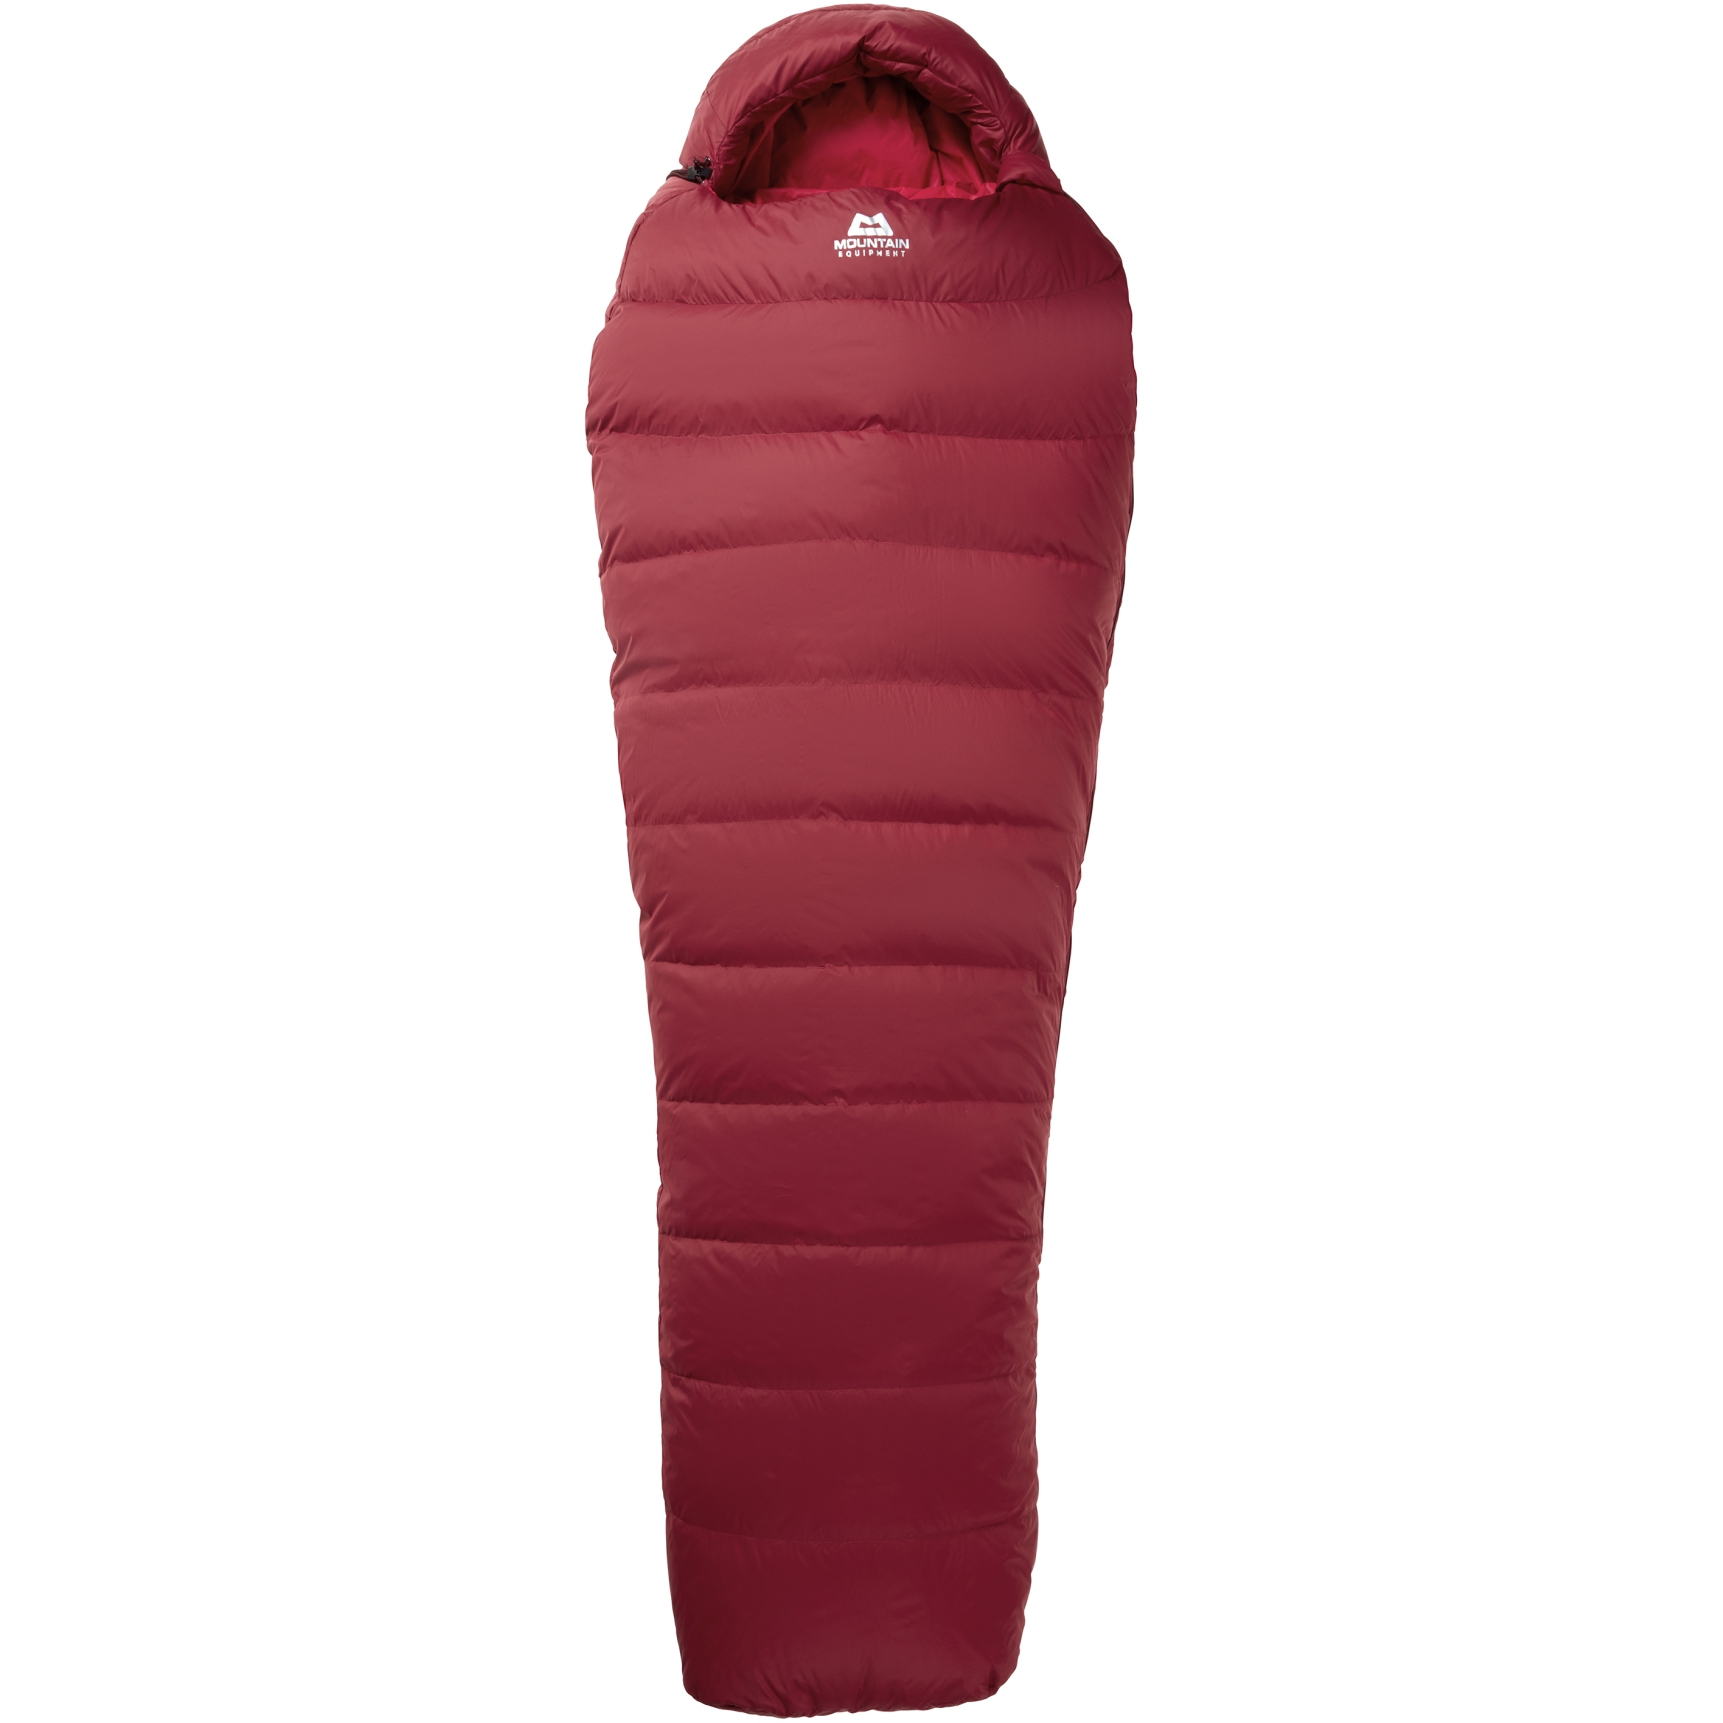 Produktbild von Mountain Equipment Olympus 450 Regular Damen Schlafsack ME-006082 - RV rechts - rhubarb